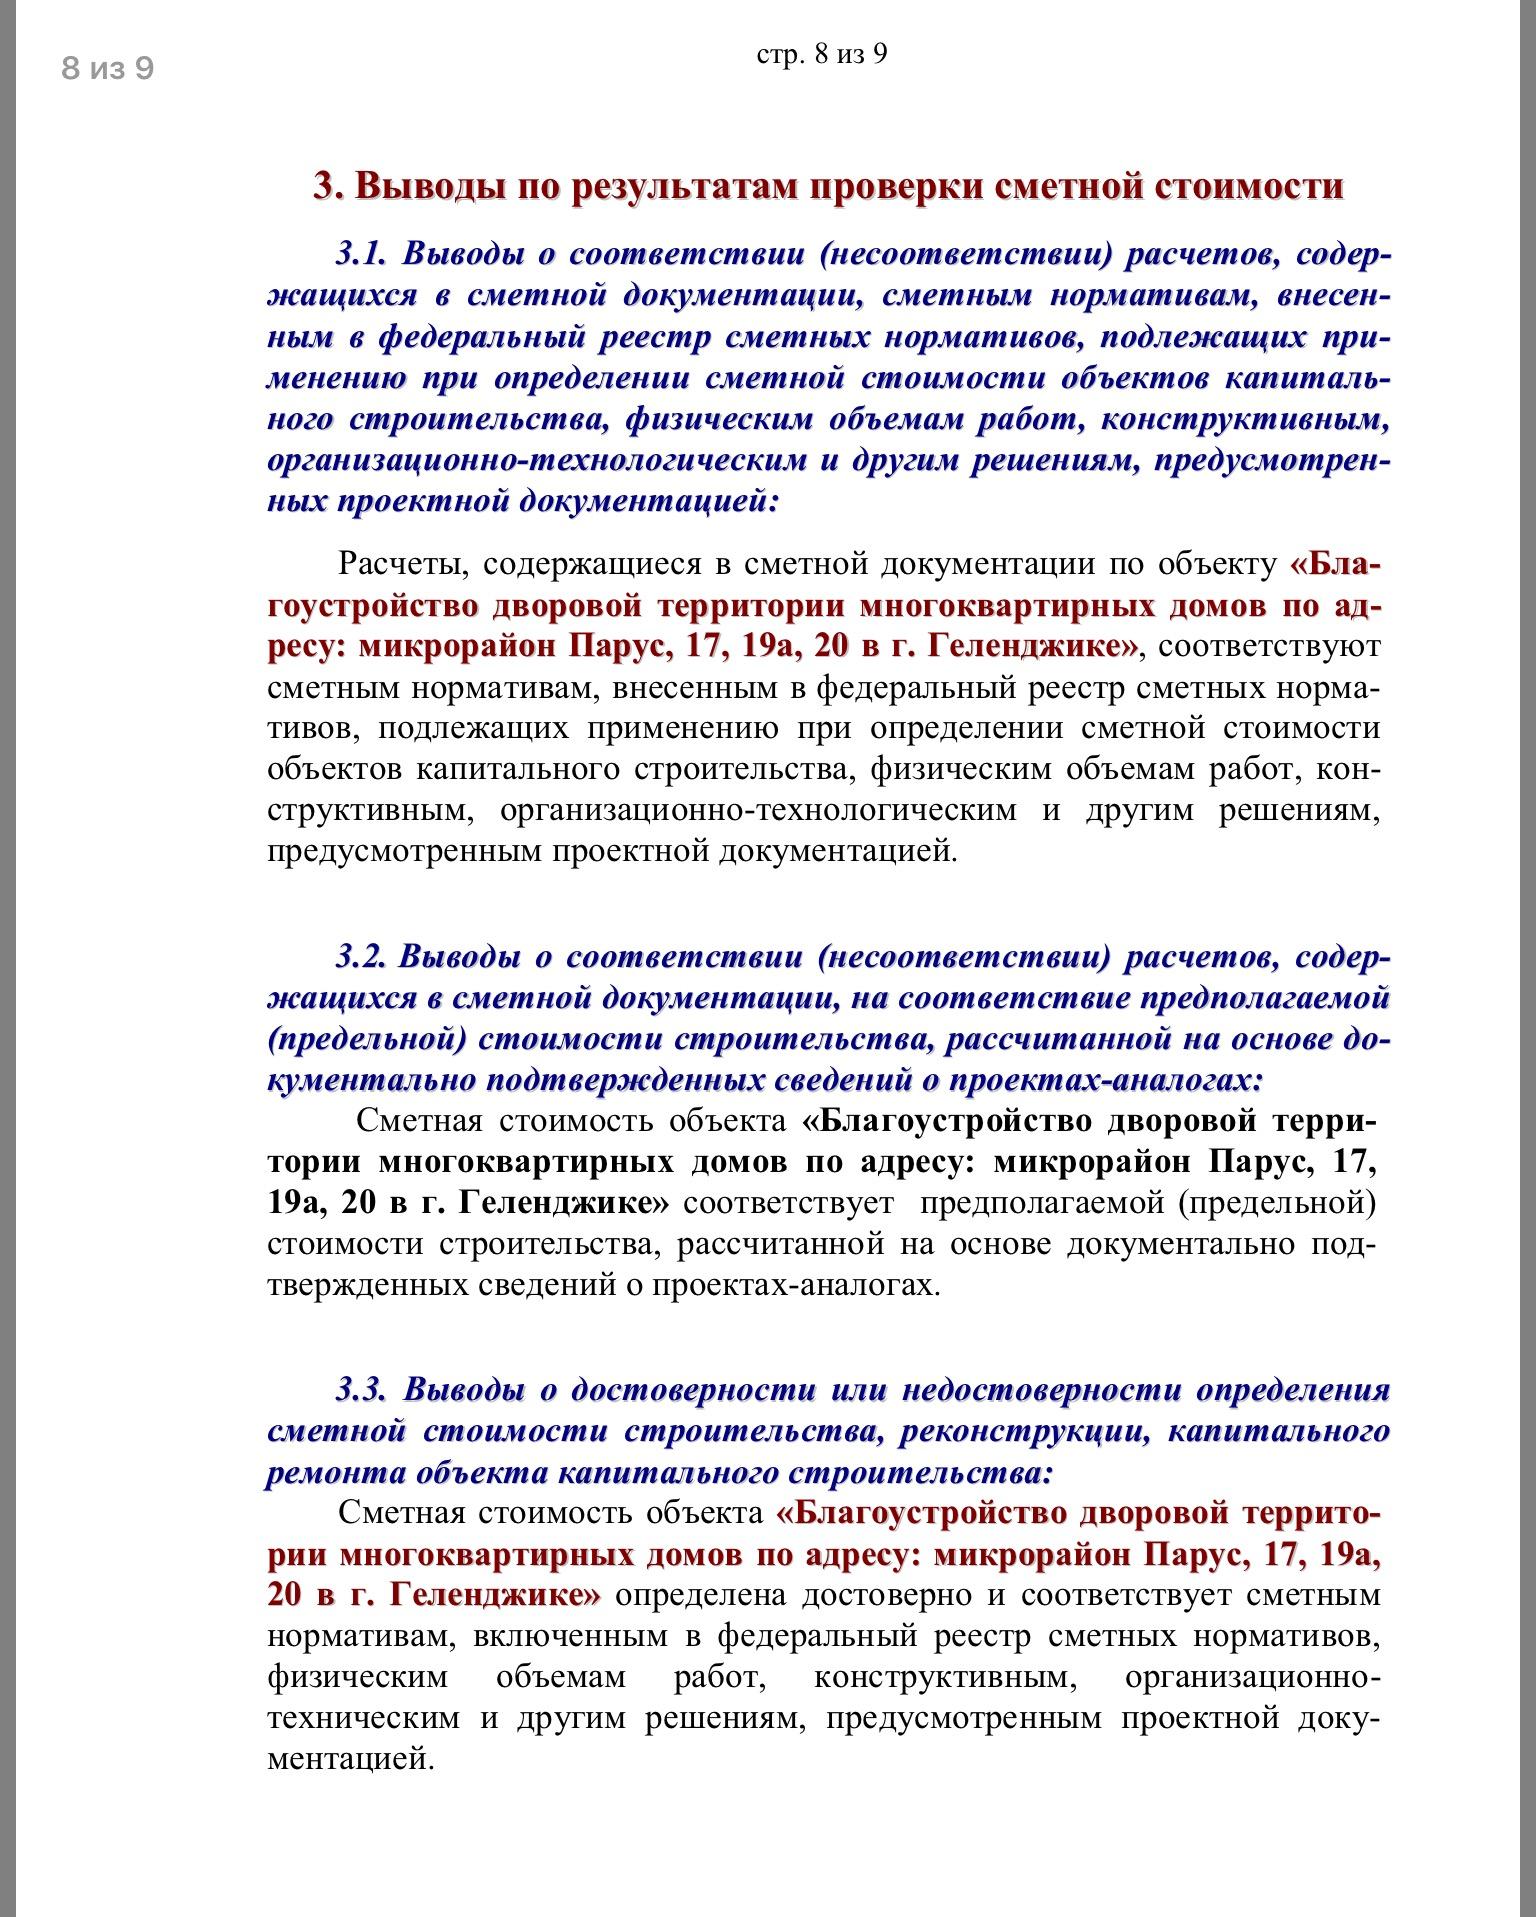 Экспертиза благоустройства придомовой территории мкн "Парус",  д. 17, 19а, 20